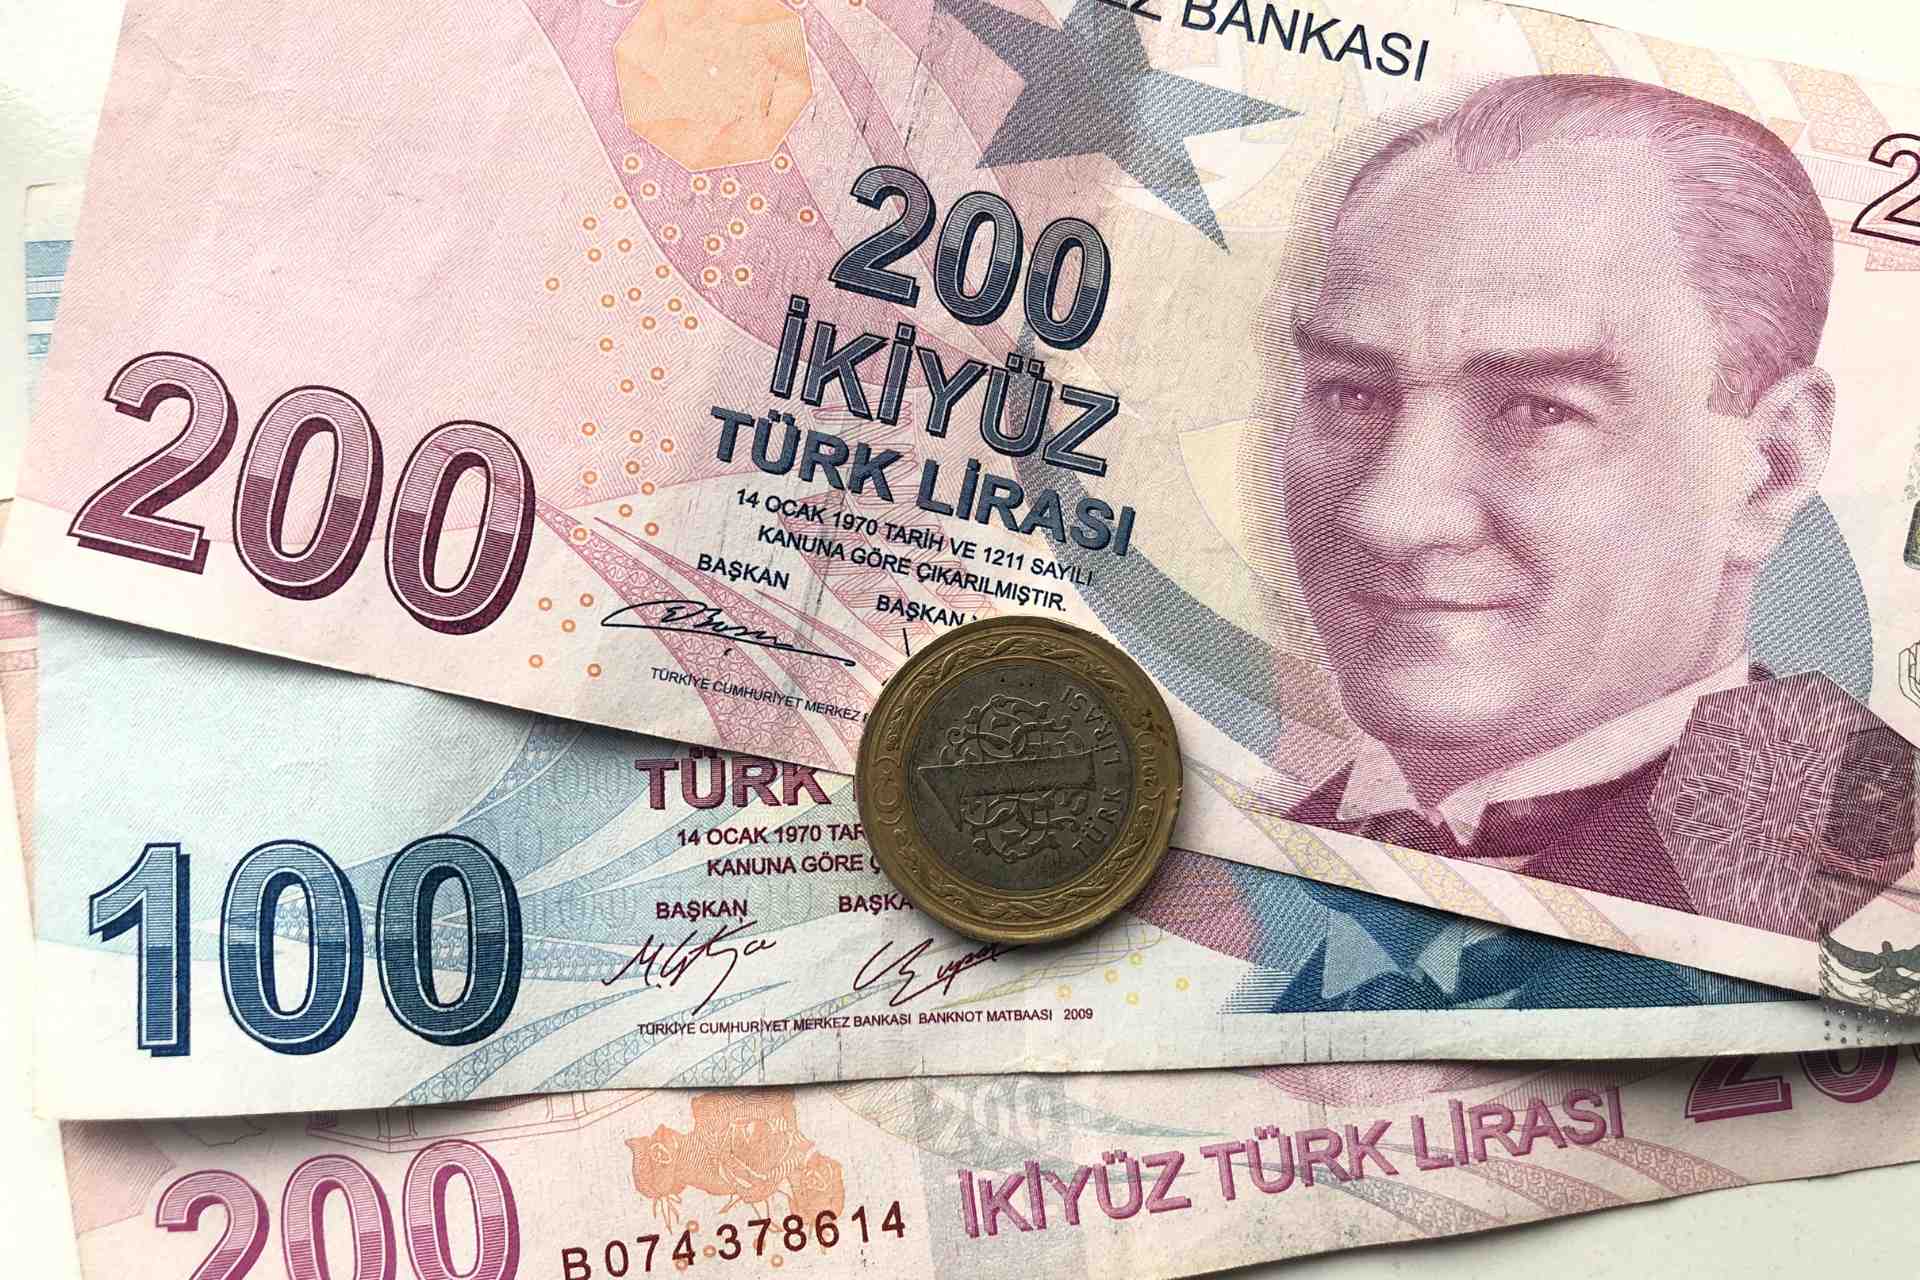 Waluta turecka - lira turecka